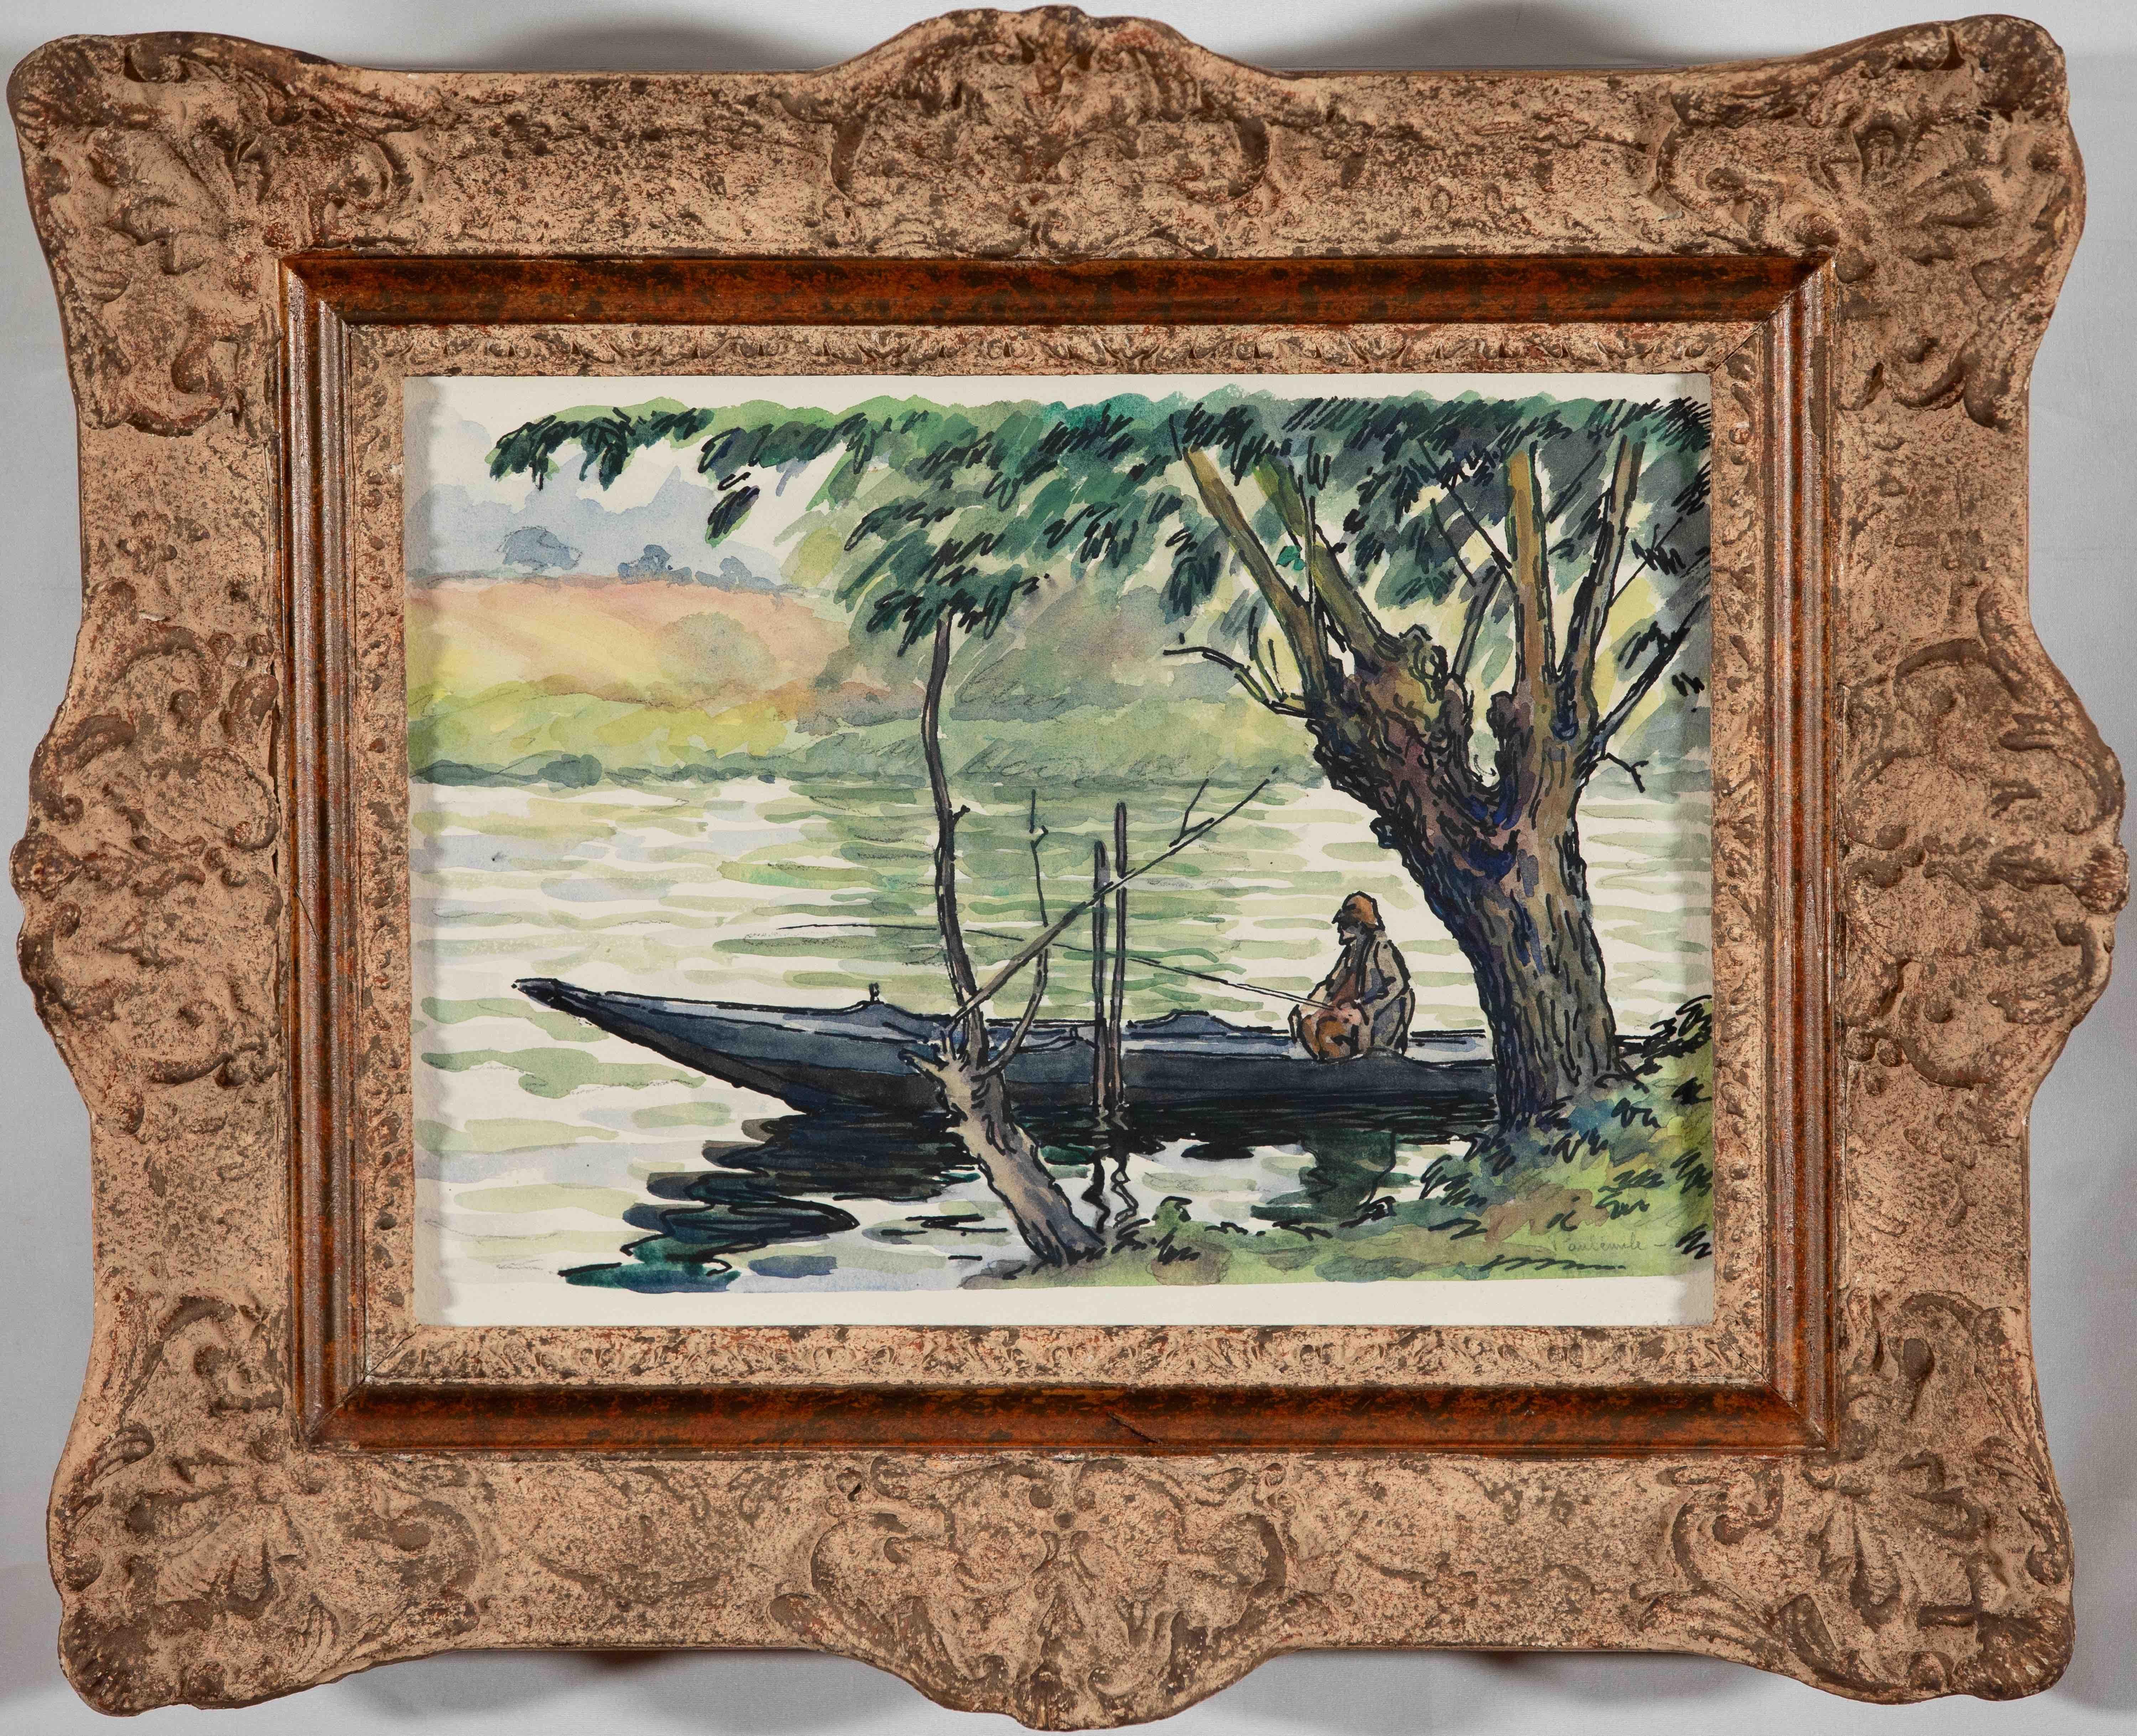 Pêcheur sur la Cure by Paulémile Pissarro - Landscape watercolour - Painting by Paul Emile Pissarro